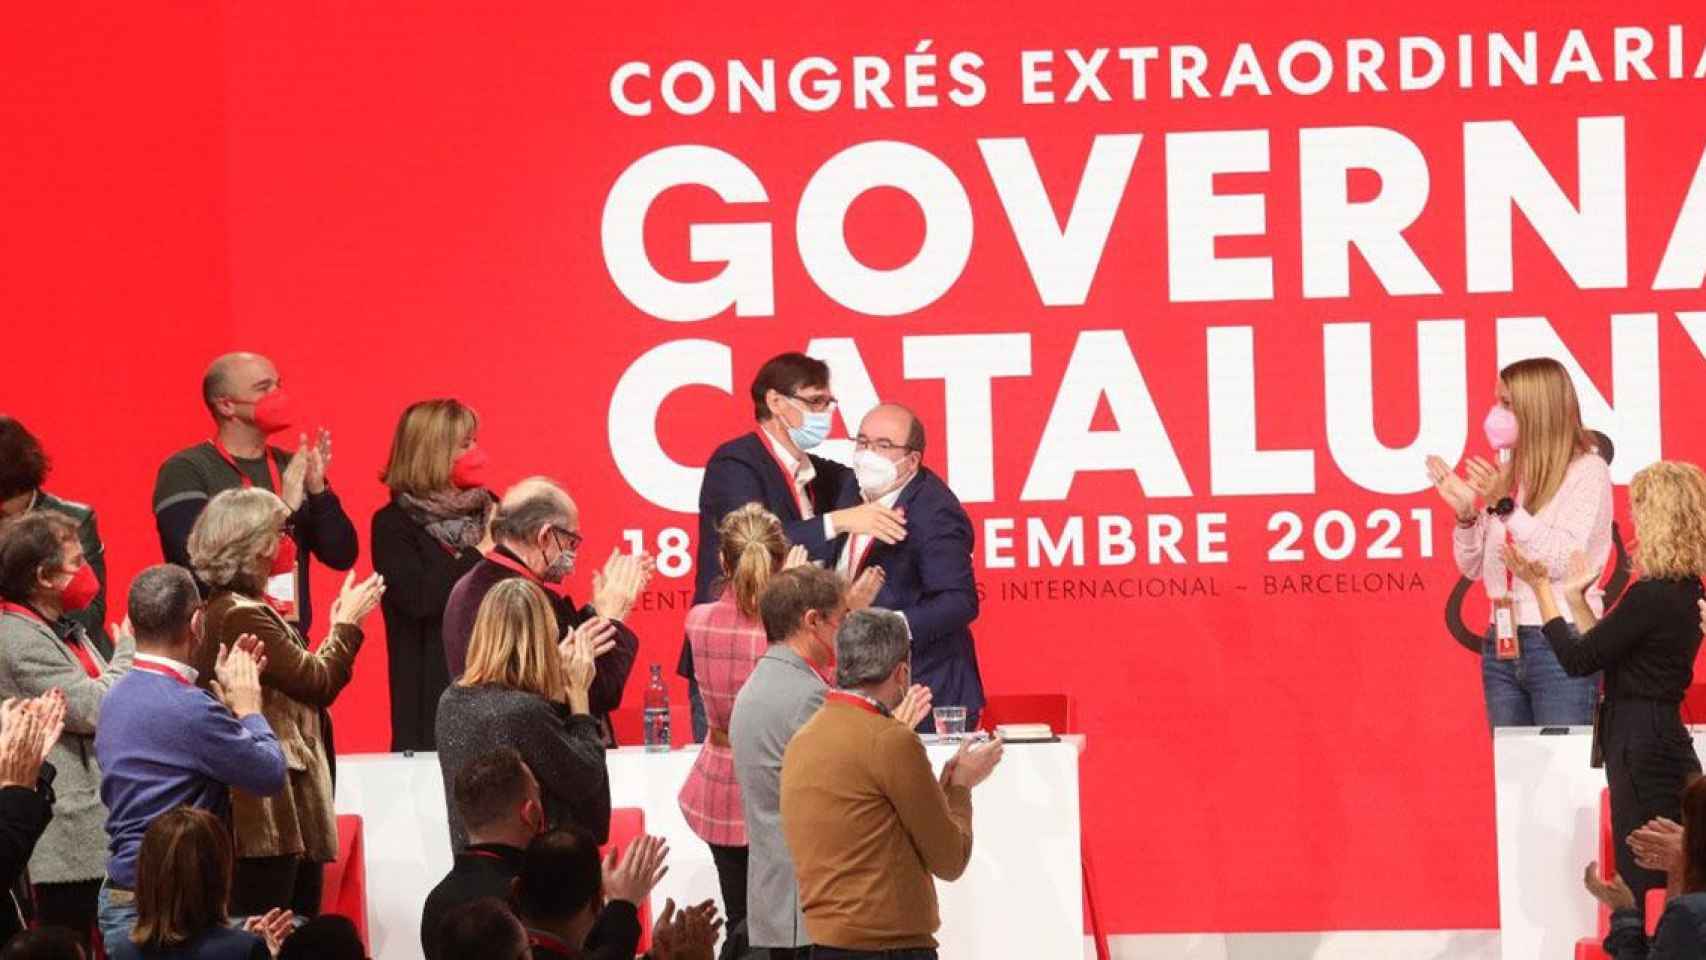 Salvador Illa y Miquel Iceta se abrazan en el congreso extraordinario del PSC / PSC